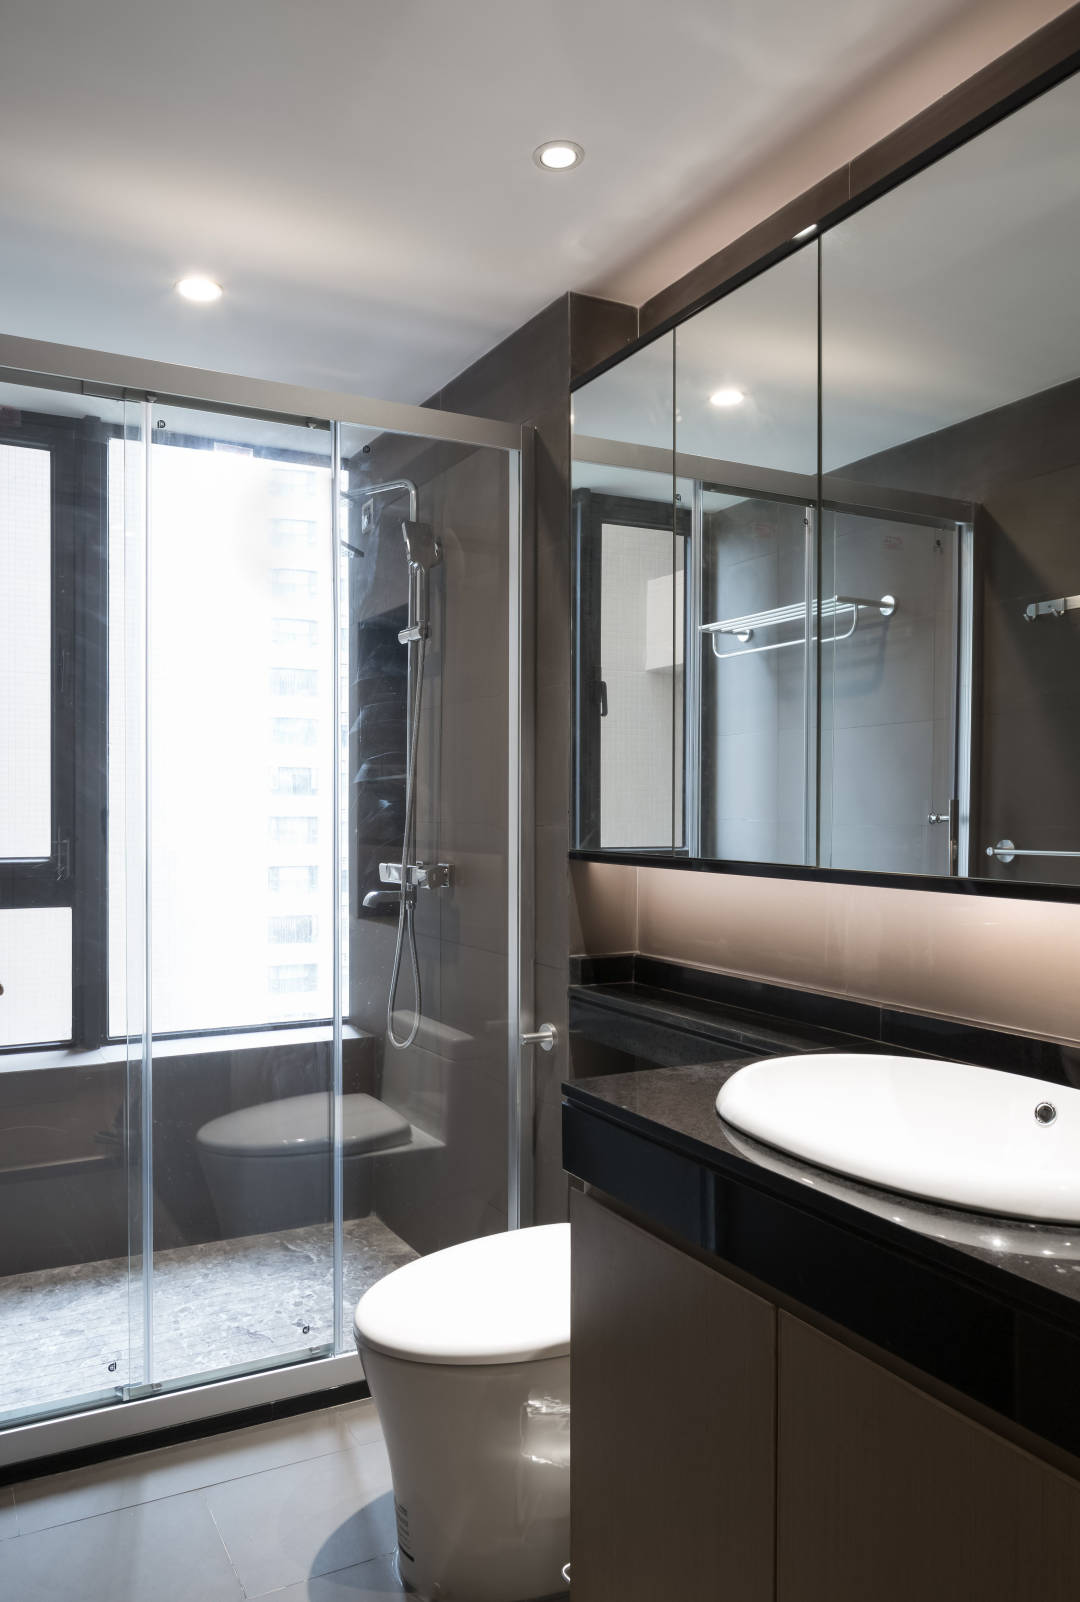 卫生间采光较好，使用了干湿分离设计，在洗手台镜面的烘托下，空间显得更为明朗。